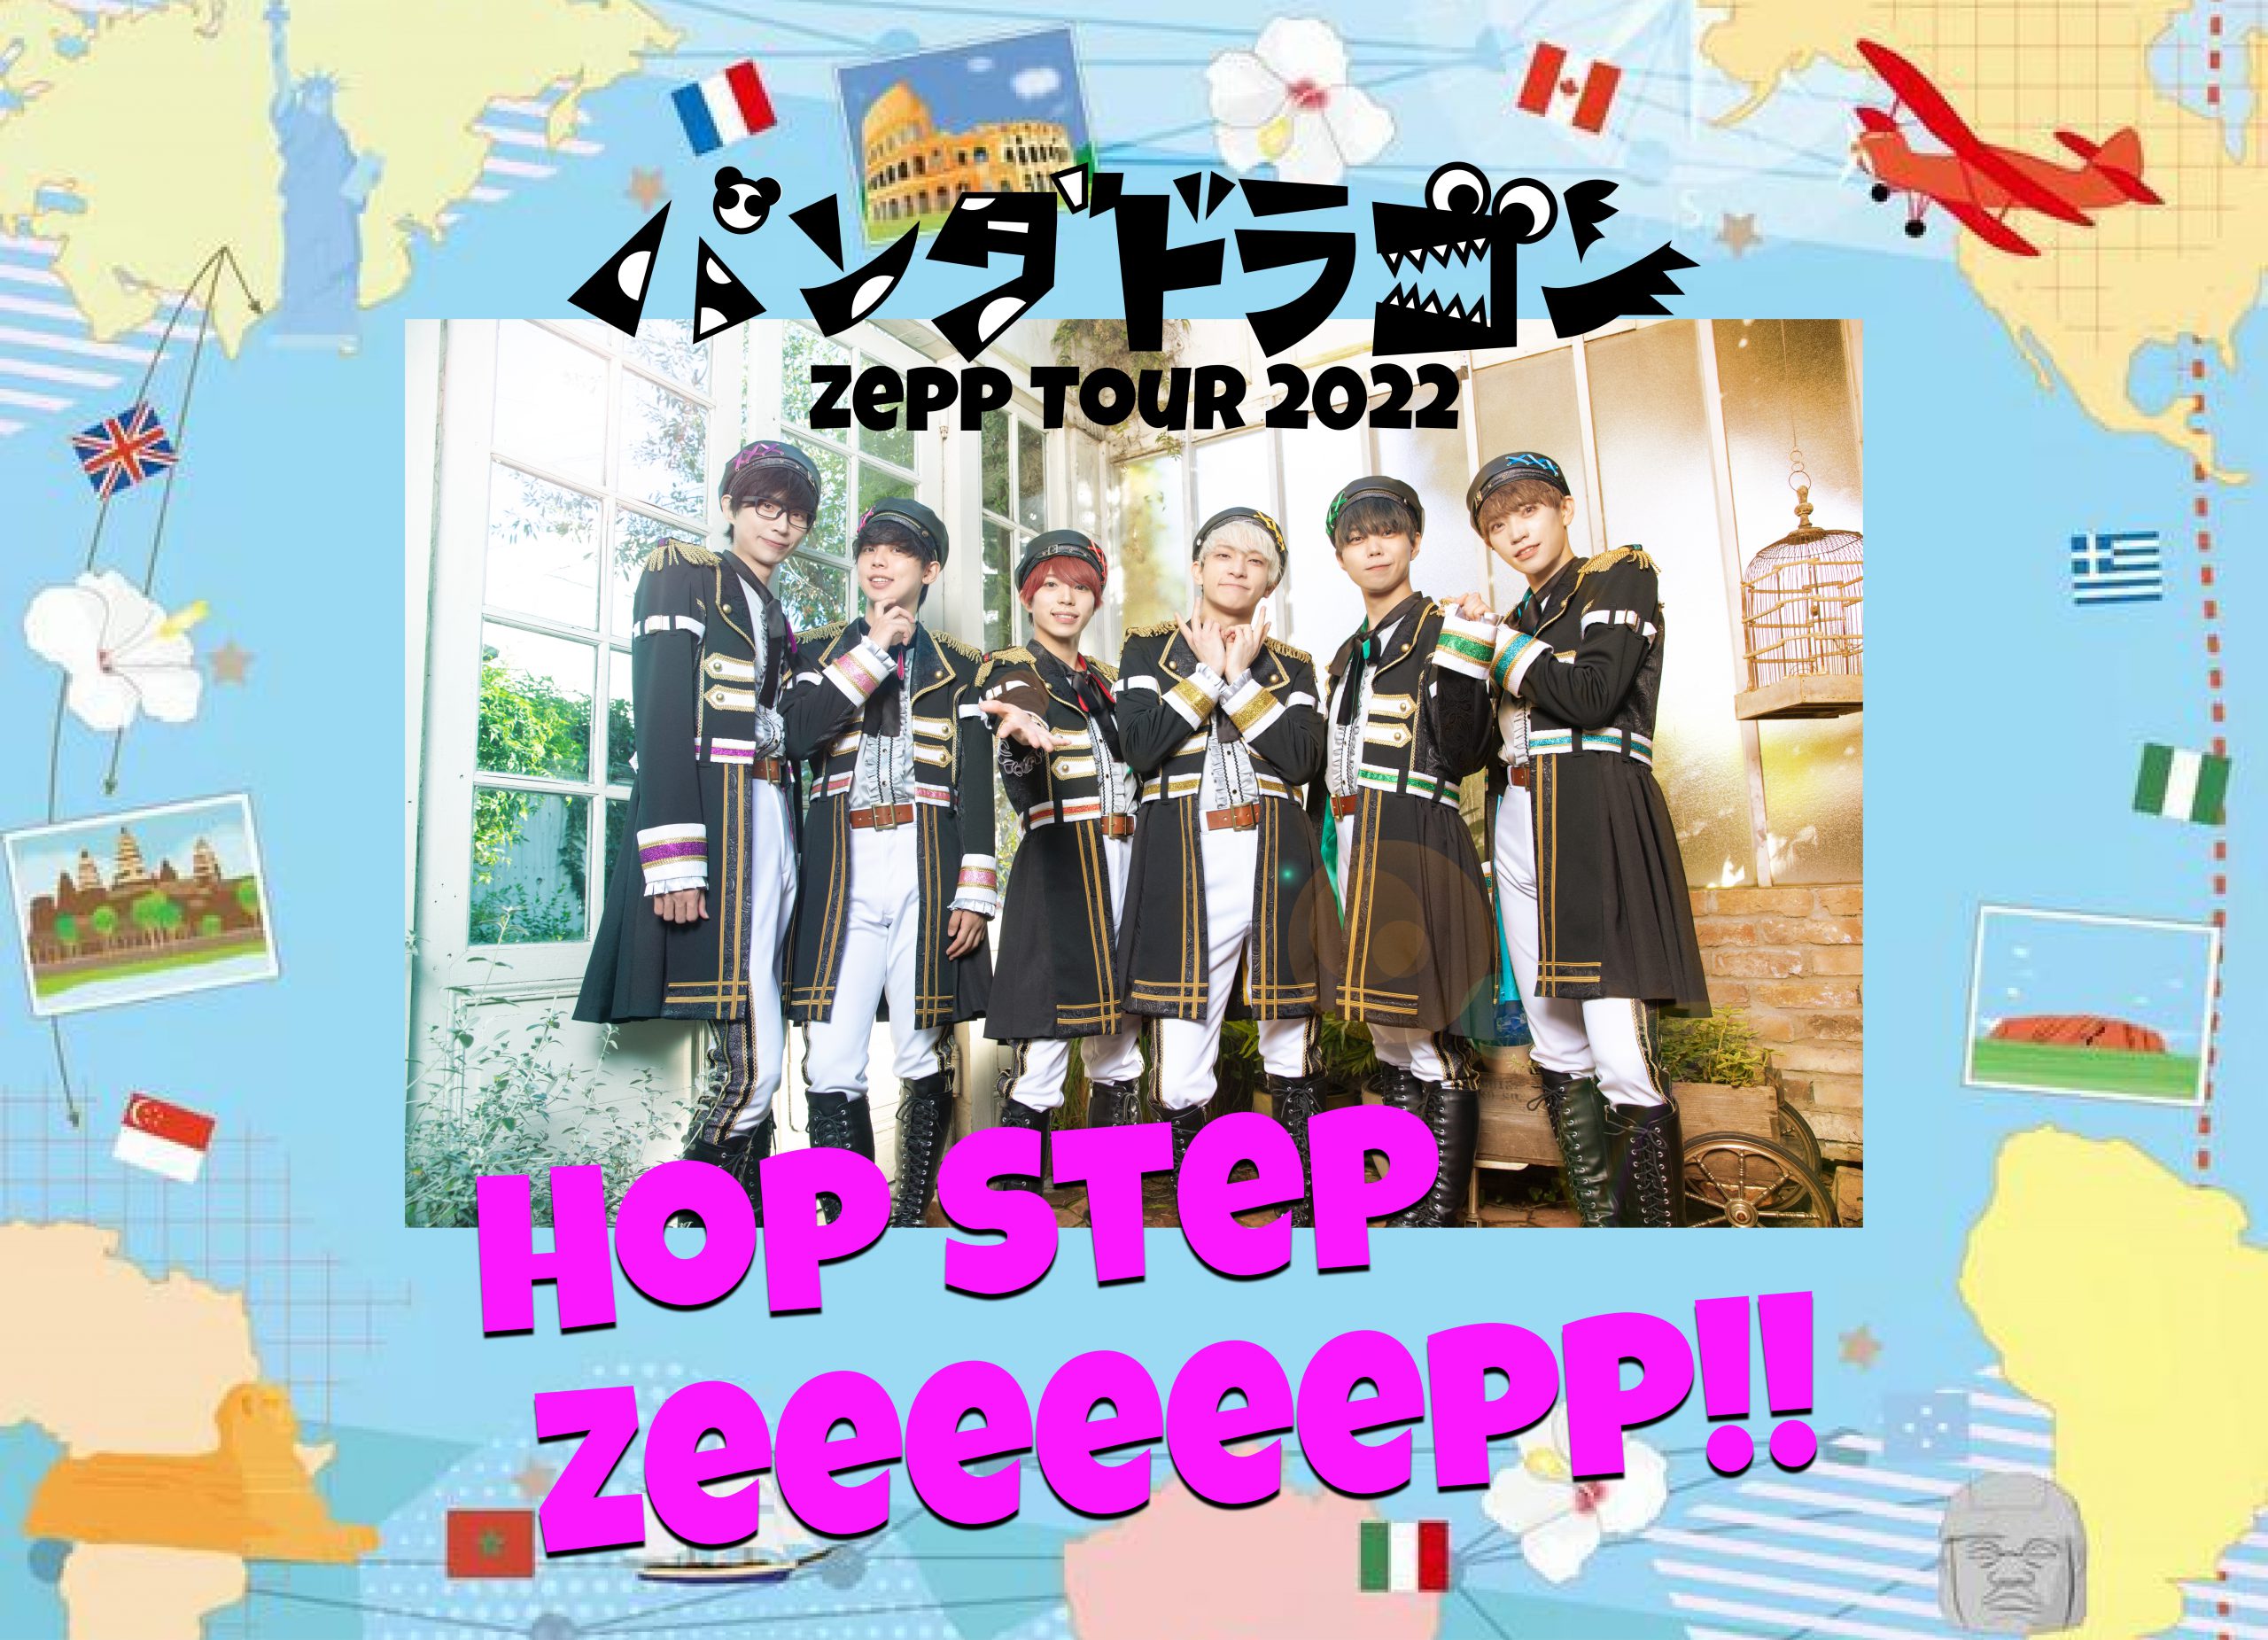 パンダドラゴンZeppツアー 『Hop Step Zeeeeeepp!!』 特設サイト